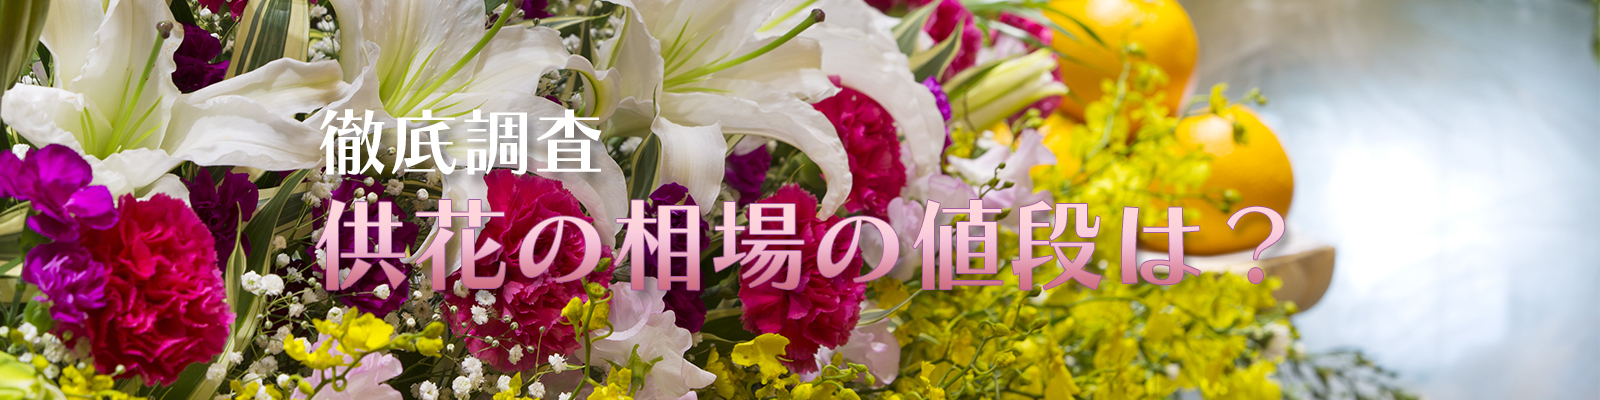 供花や弔電を贈るには 読み方や贈る時のマナー おすすめの生花店を紹介 供花の相場の値段